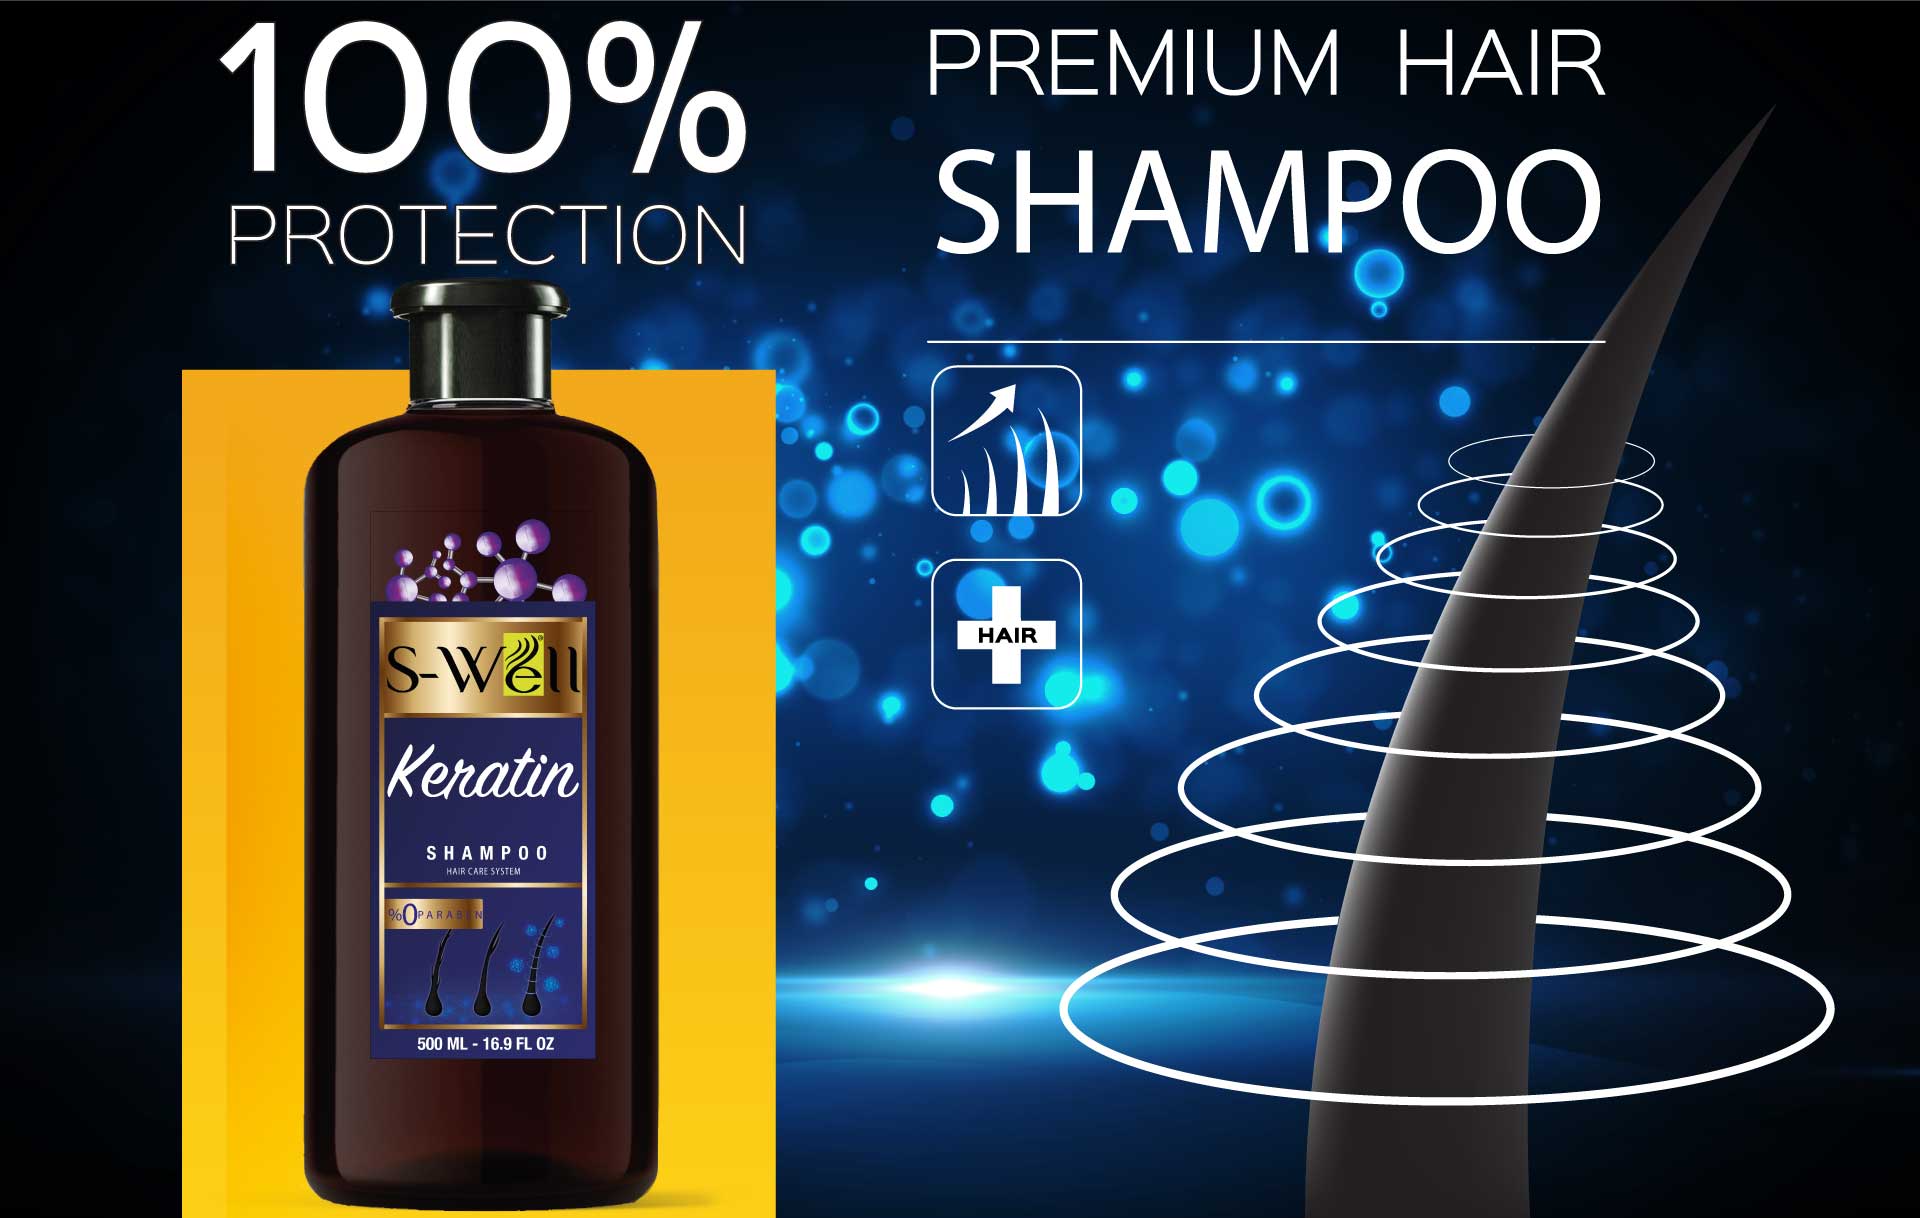 S-Well® Keratin Özlü Şampuan ile Saçlarınız daima güçlü ve sağlıklı olsun